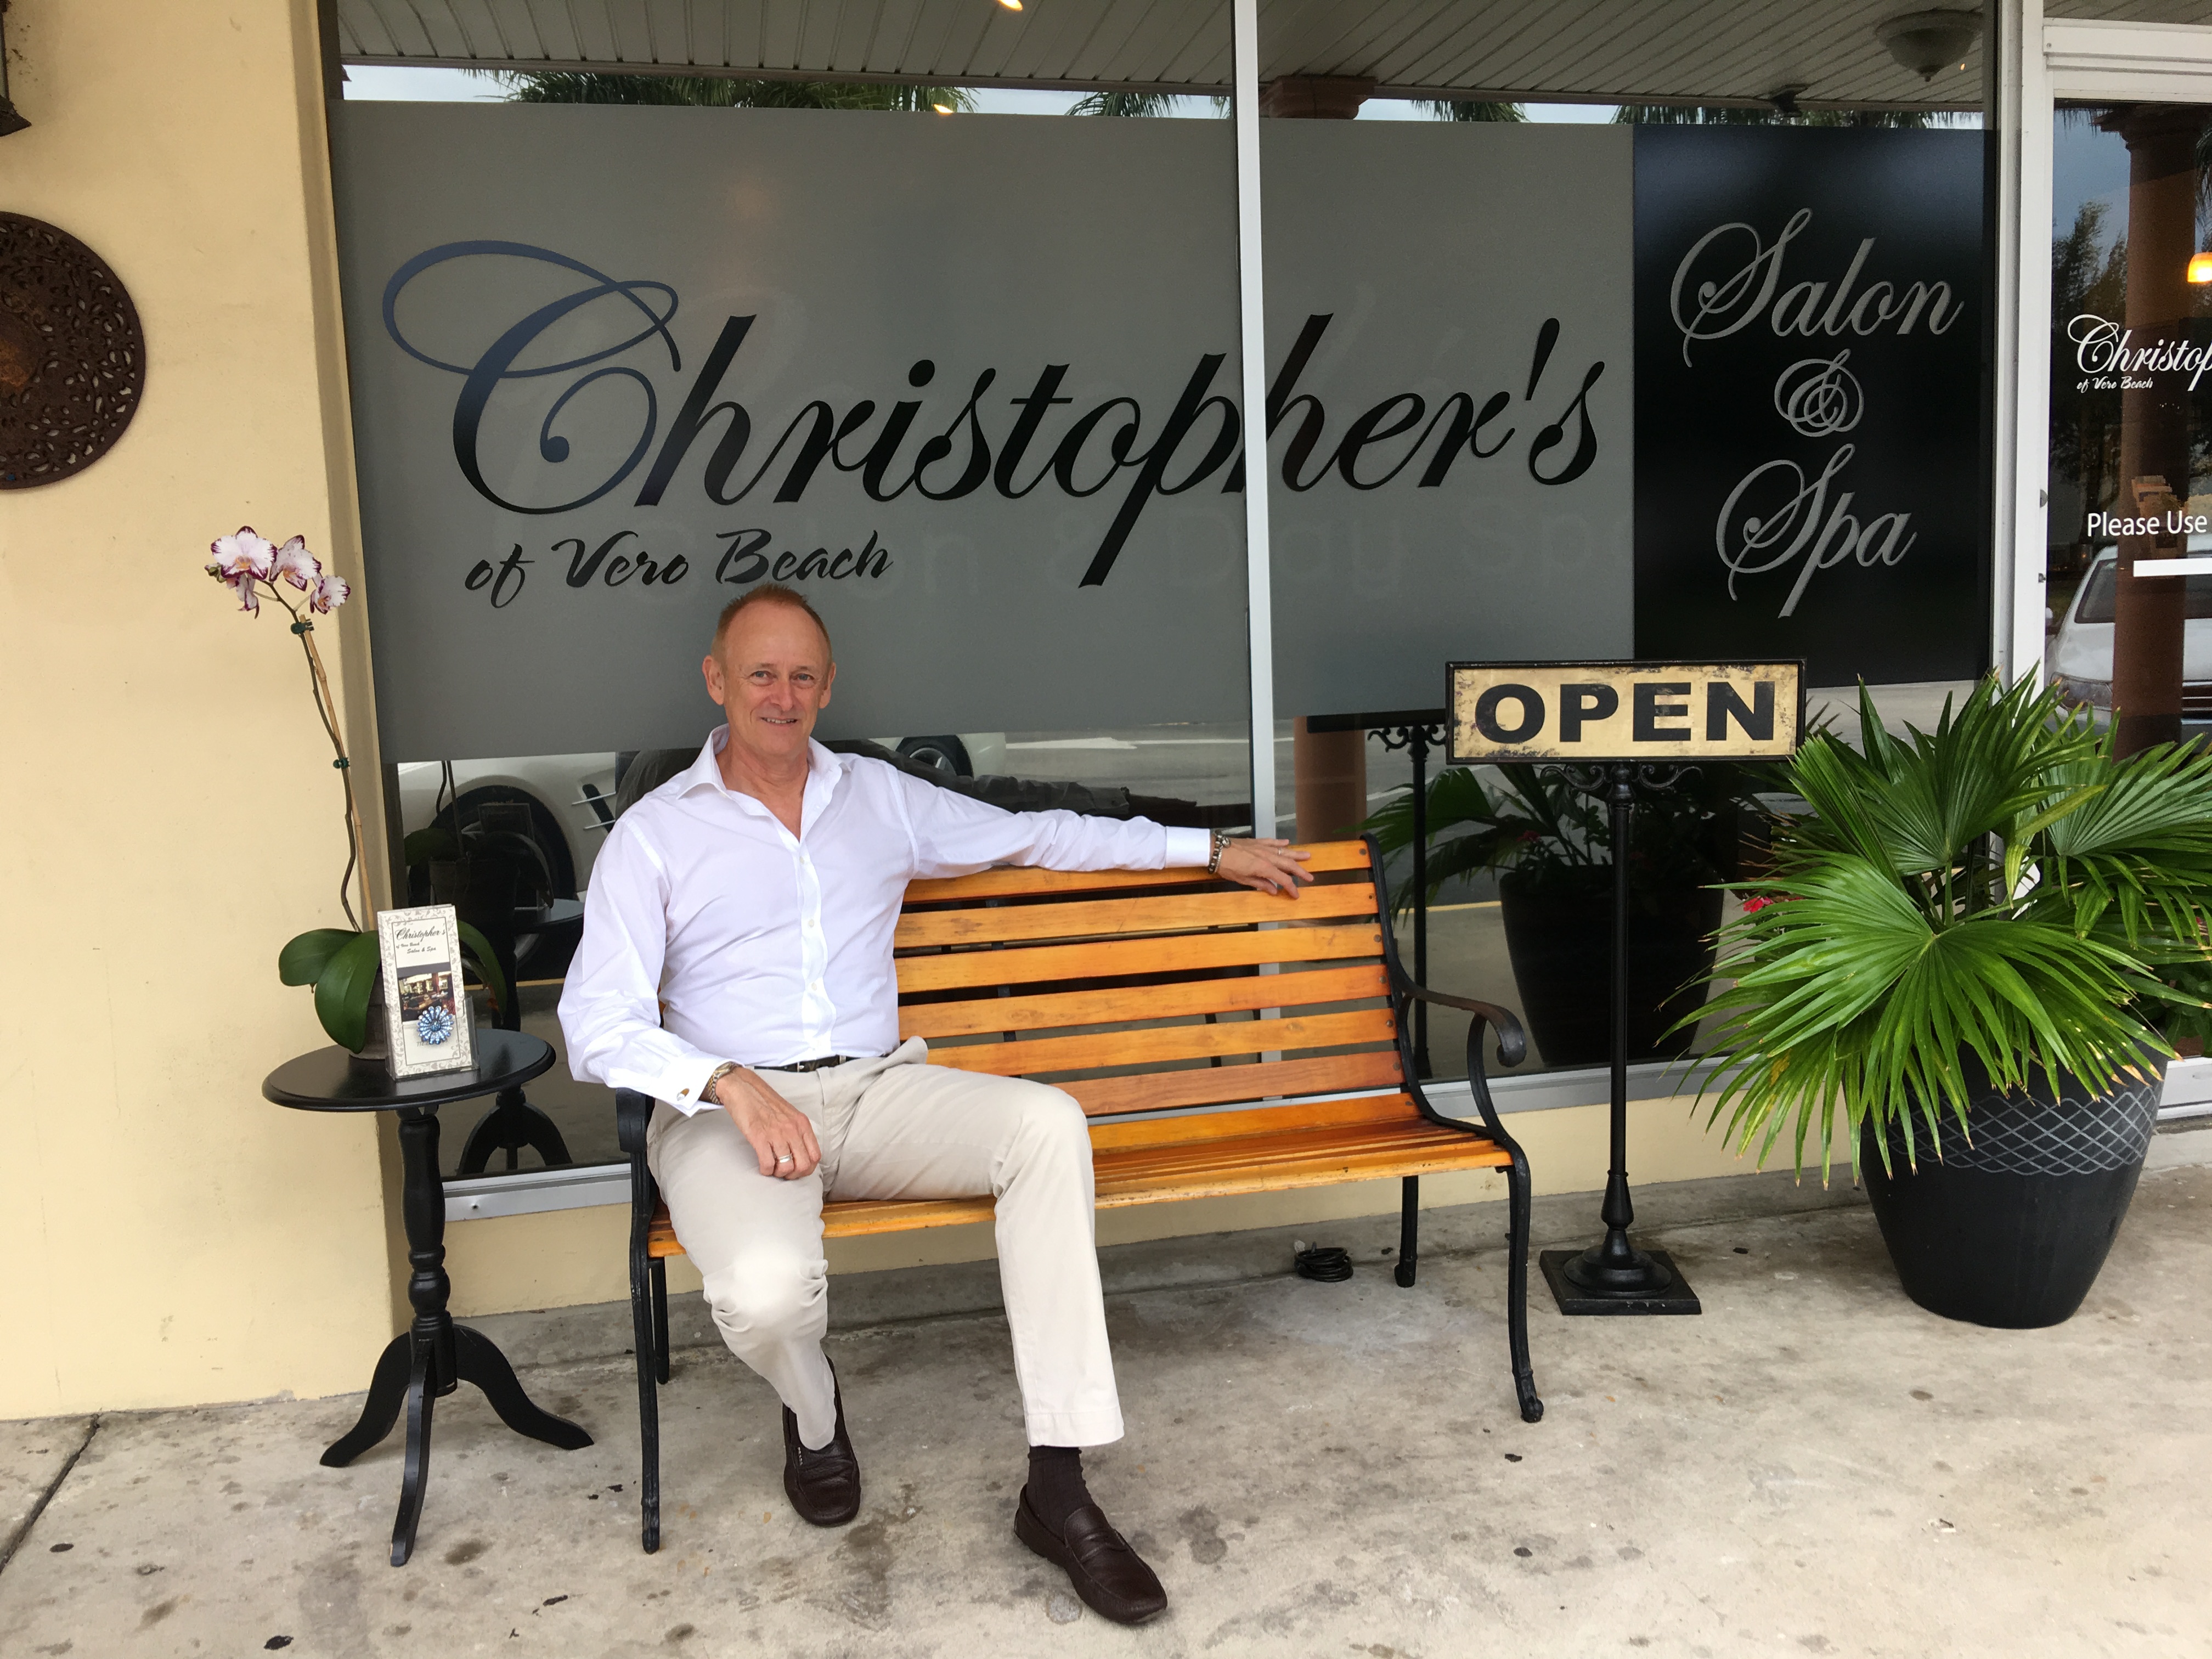 Christopher's of Vero Beach